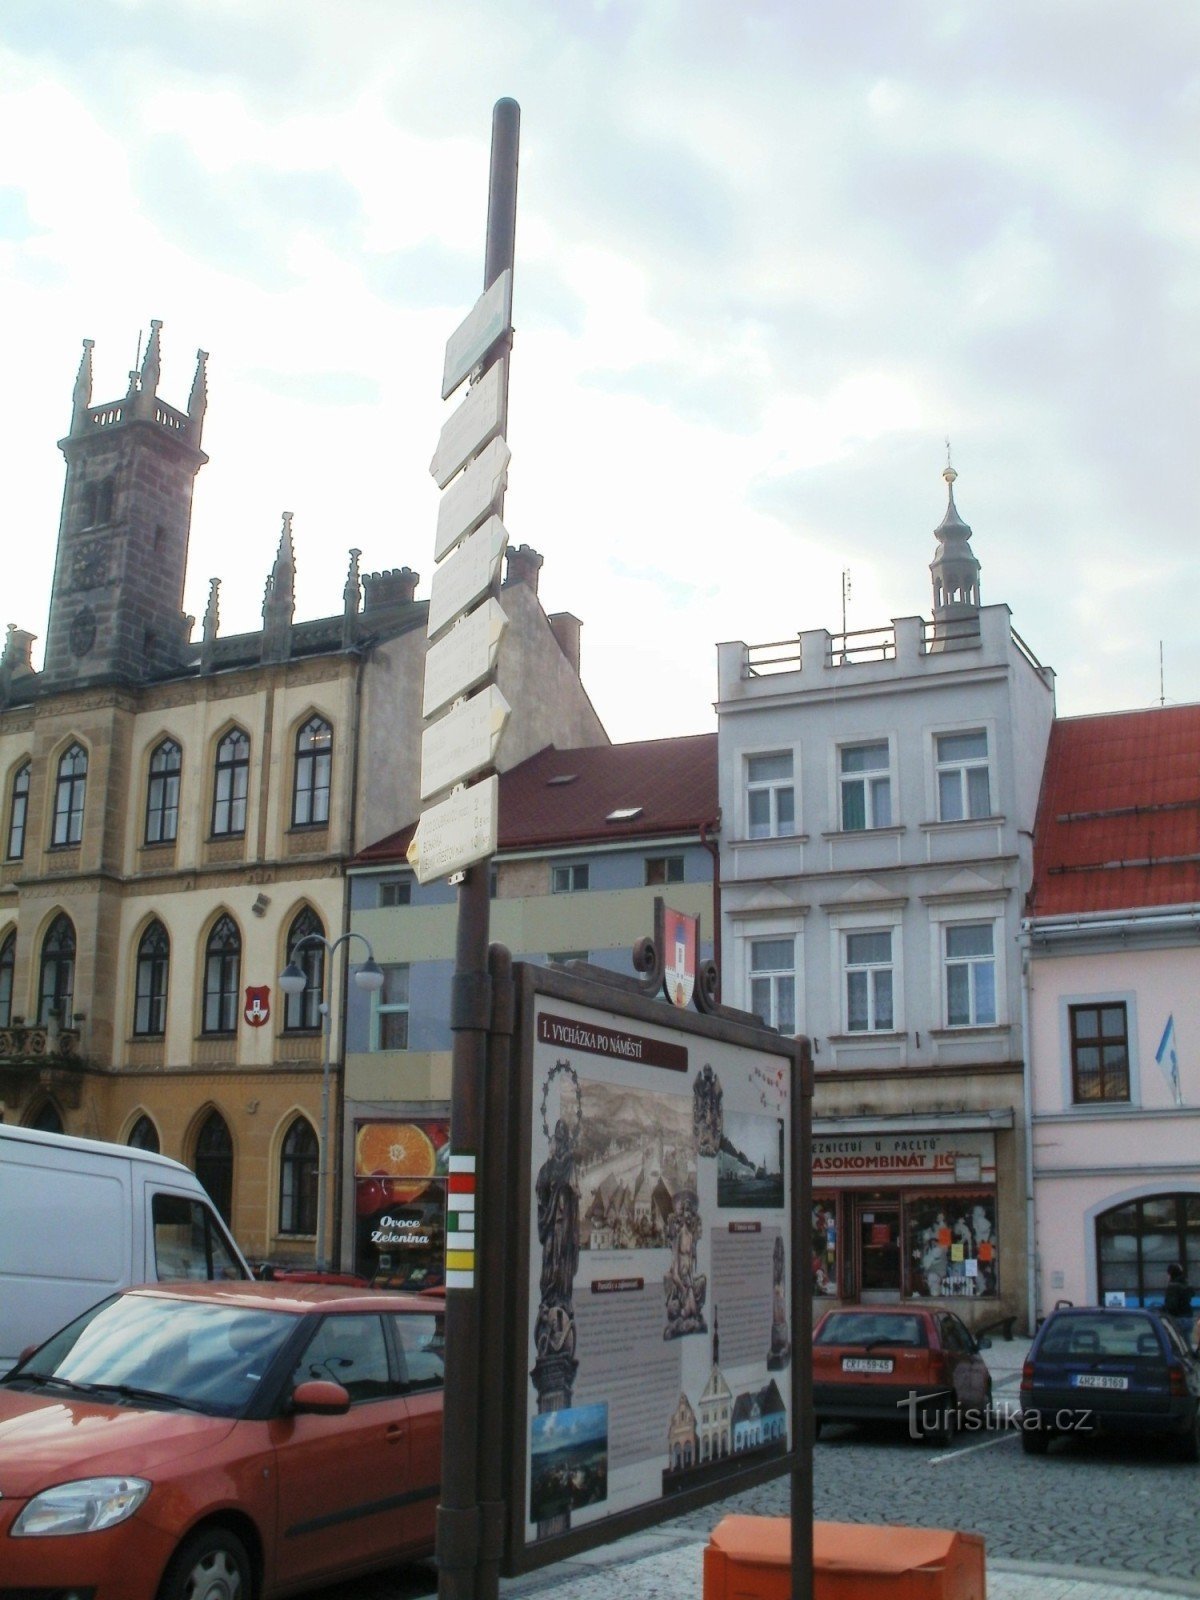 Hořice - der wichtigste touristische Wegweiser